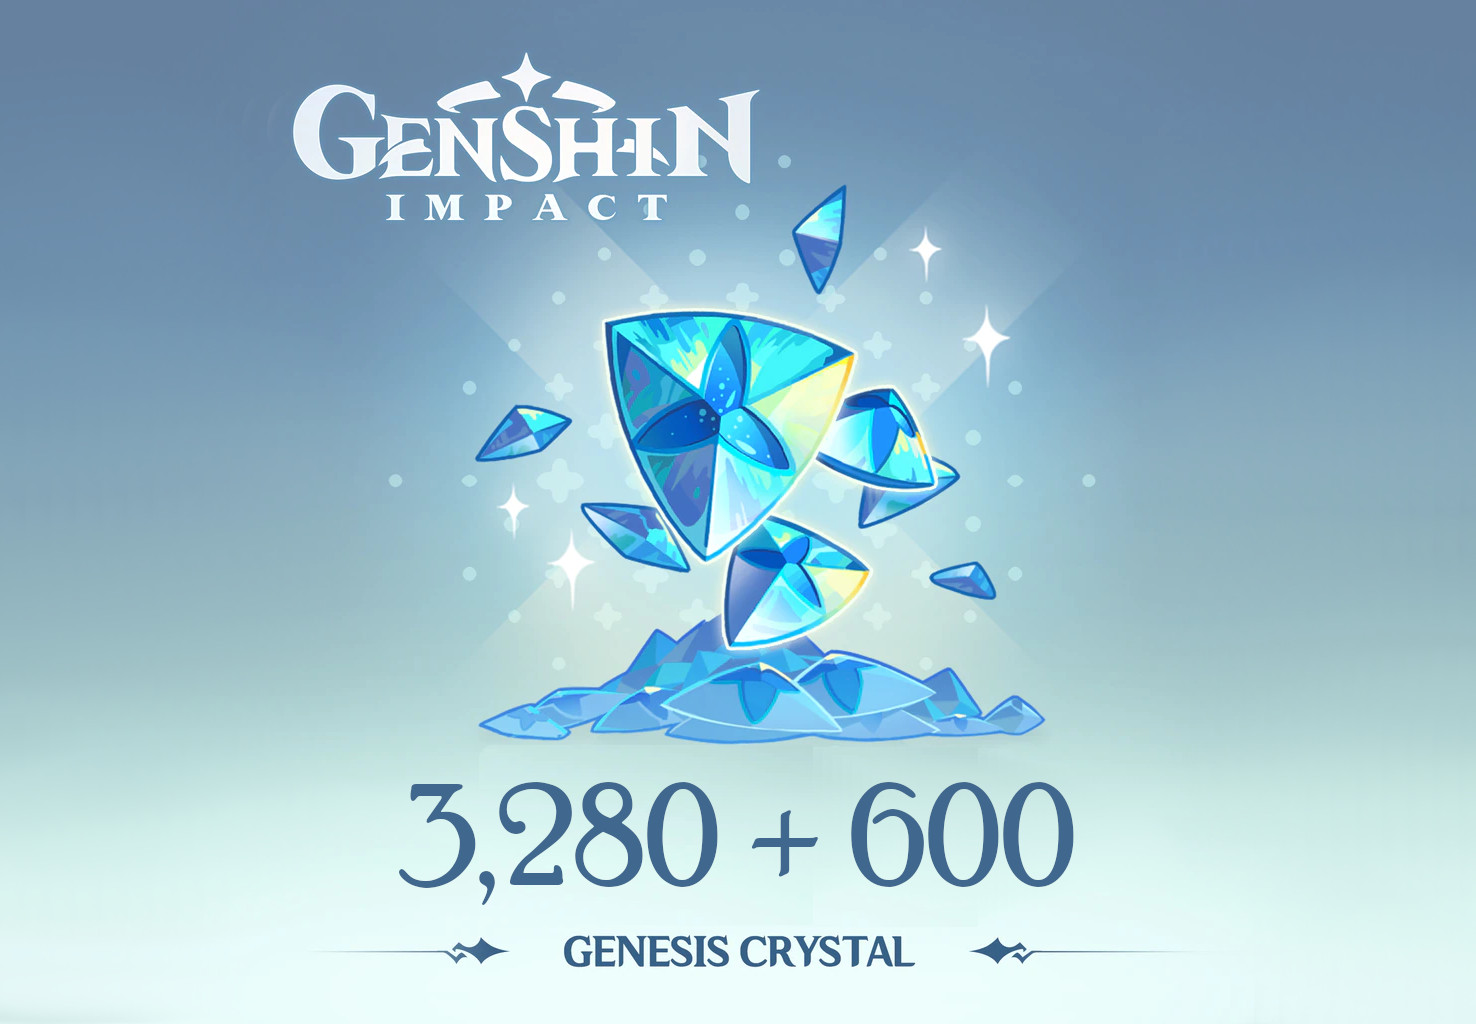 Genshin Impact - 3,280 + 600 Genesis Crystals Reidos Voucher $53.39